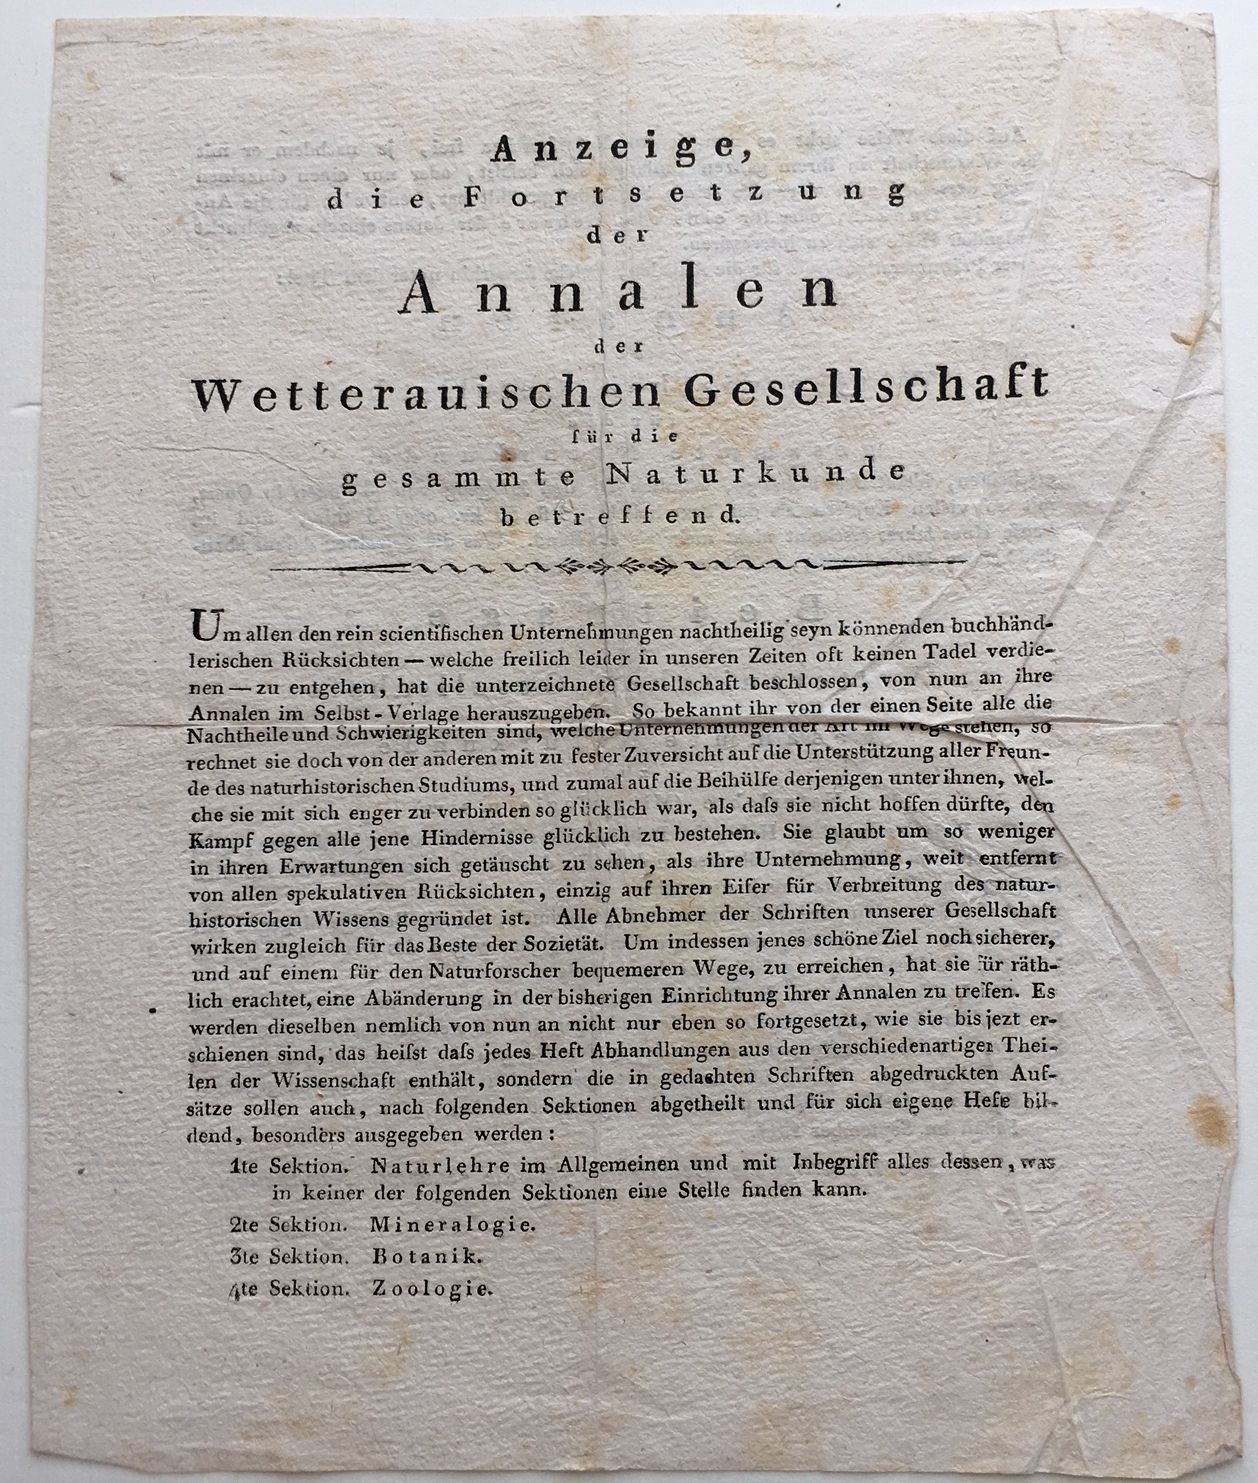 Wetterauische Gesellschaft, Anzeige, die Fortsetzung der Annalen, September 1811 (Taunus-Rhein-Main - Regionalgeschichtliche Sammlung Dr. Stefan Naas CC BY-NC-SA)